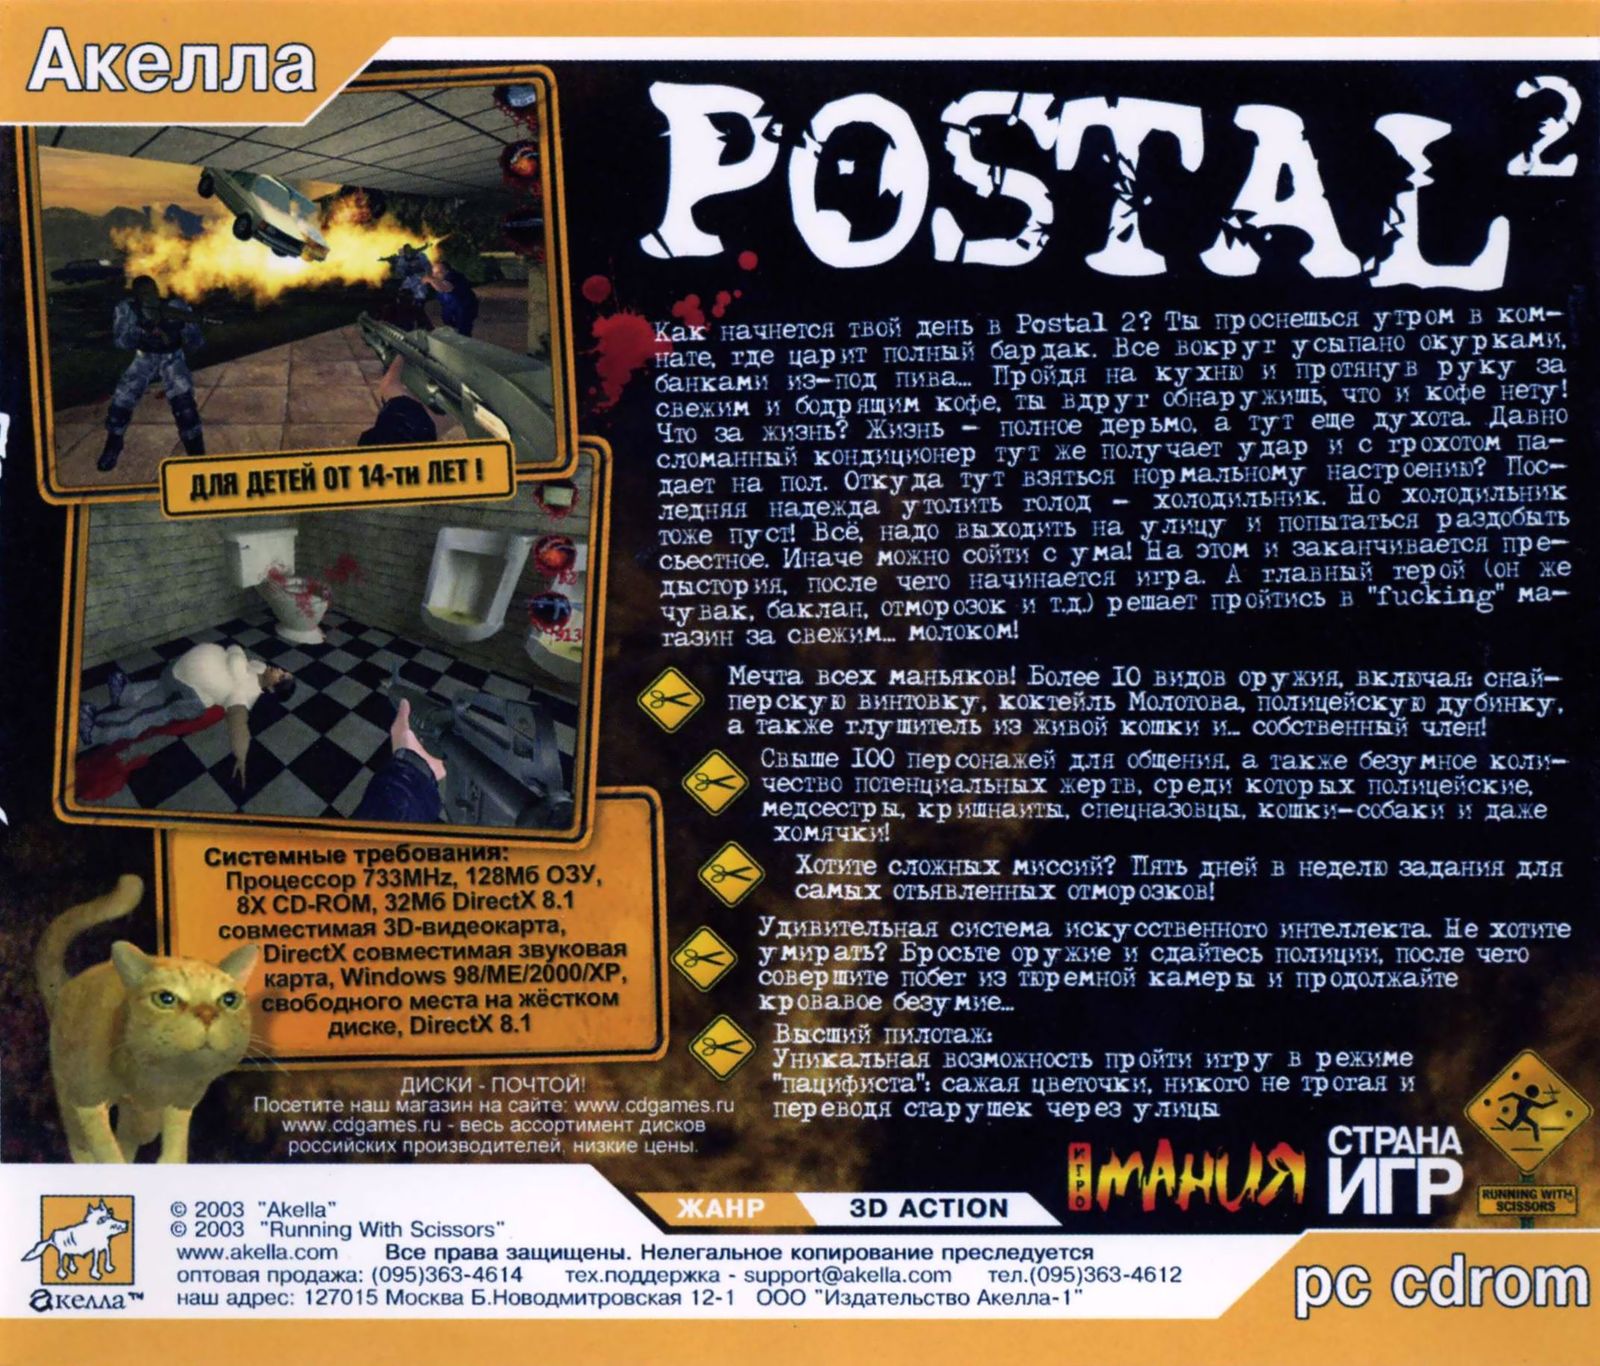 Postal 2 awp delete review все оружие фото 46